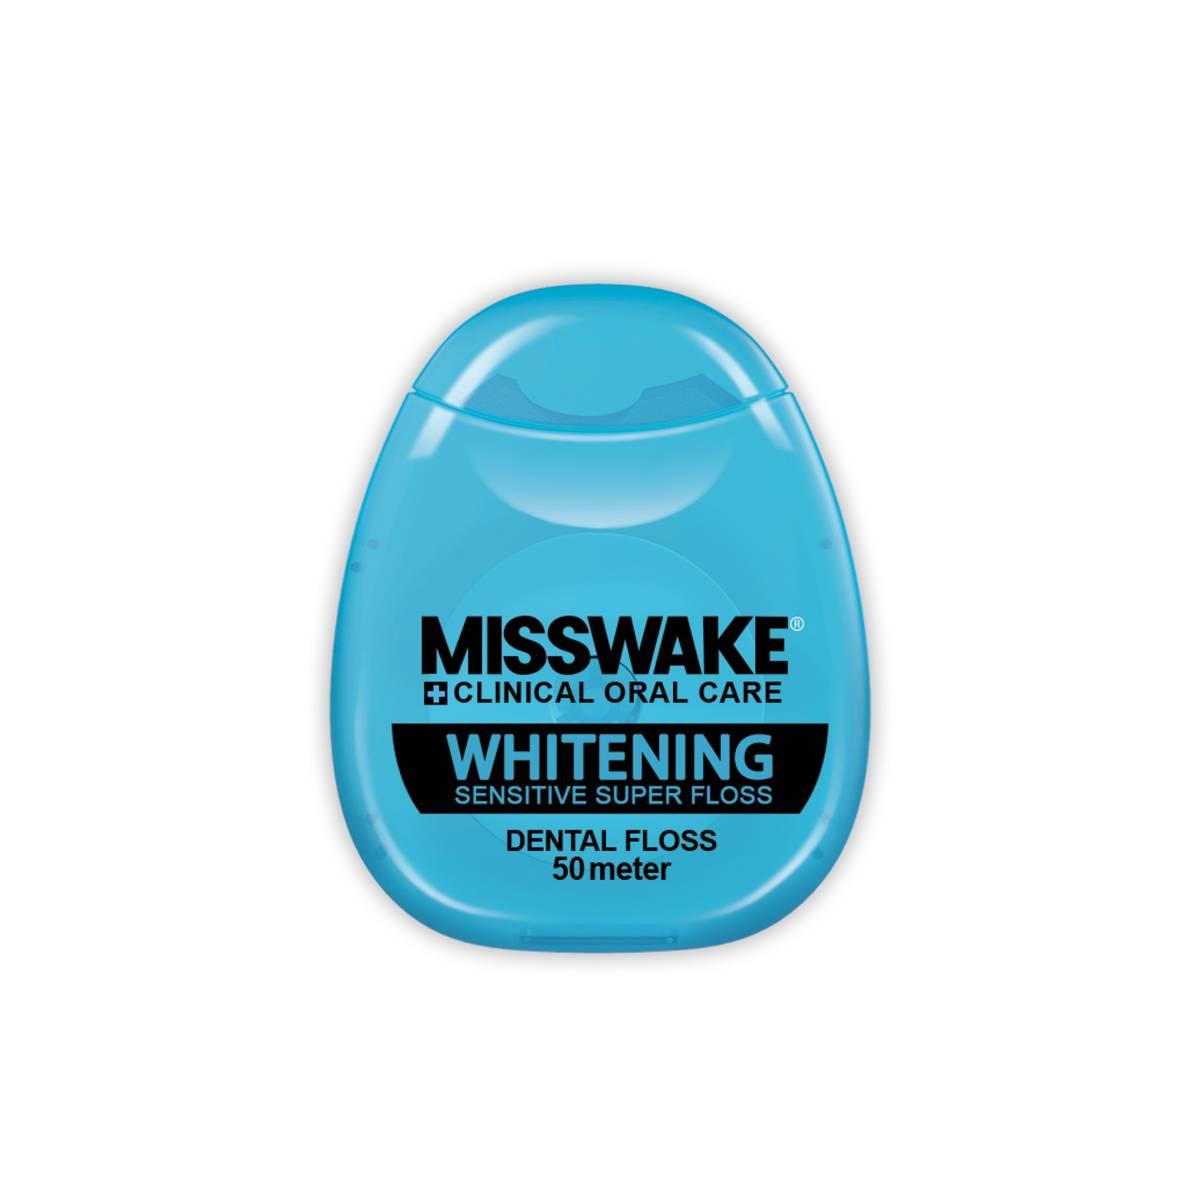 Misswake Whitening Dental Floss